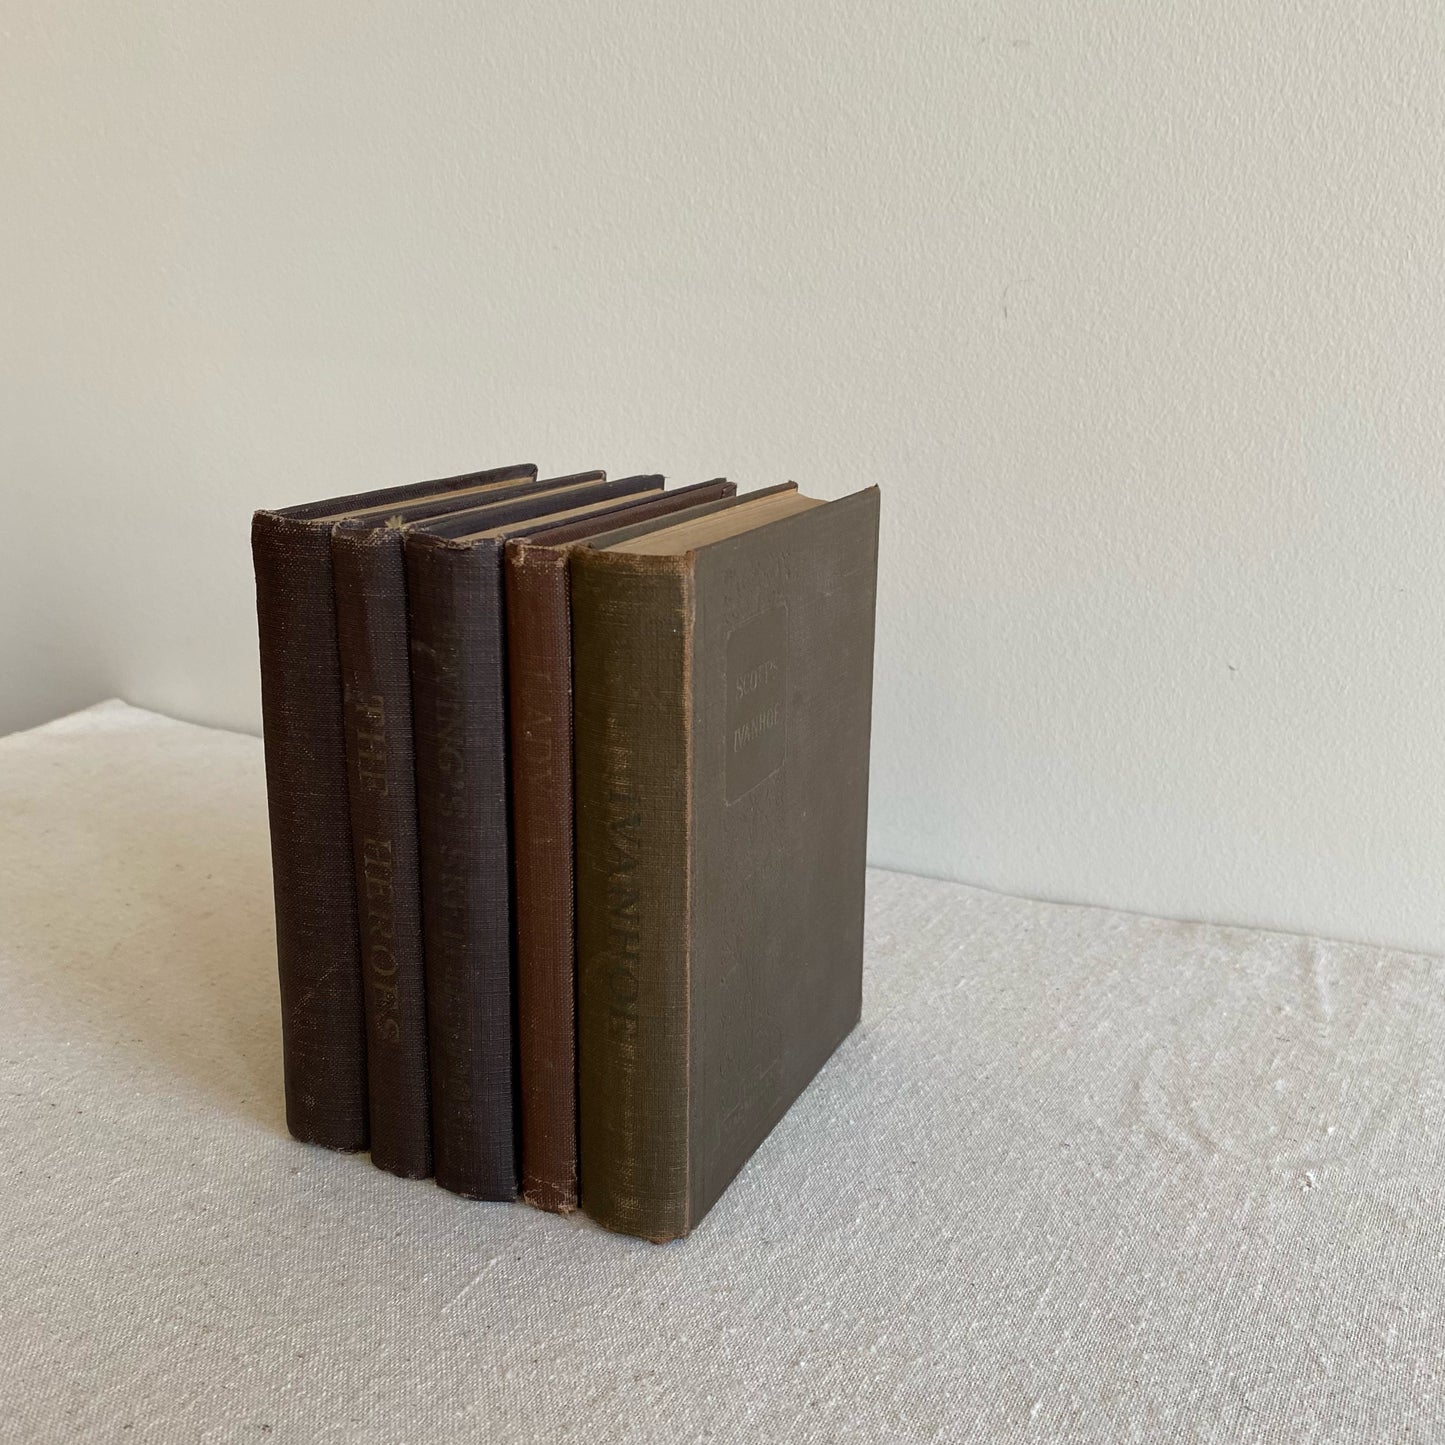 Set of 5 Antique Books “The Macmillan Pocket Classics“